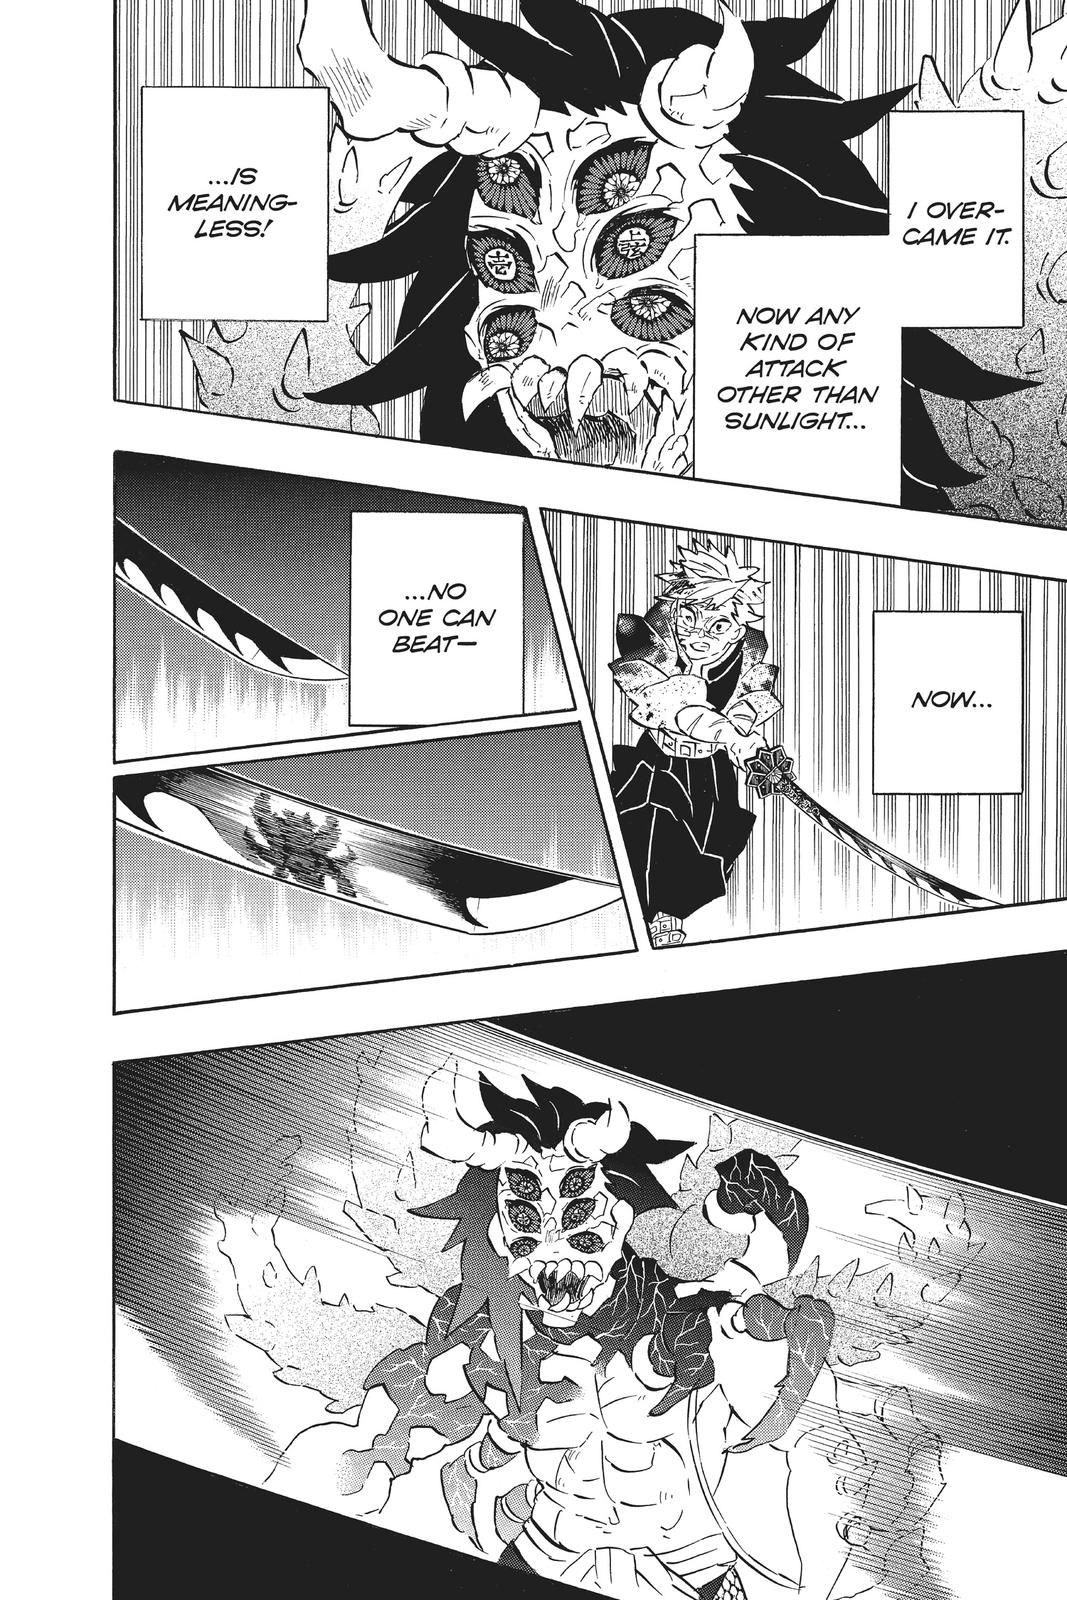 Demon Slayer Manga Manga Chapter - 176 - image 11